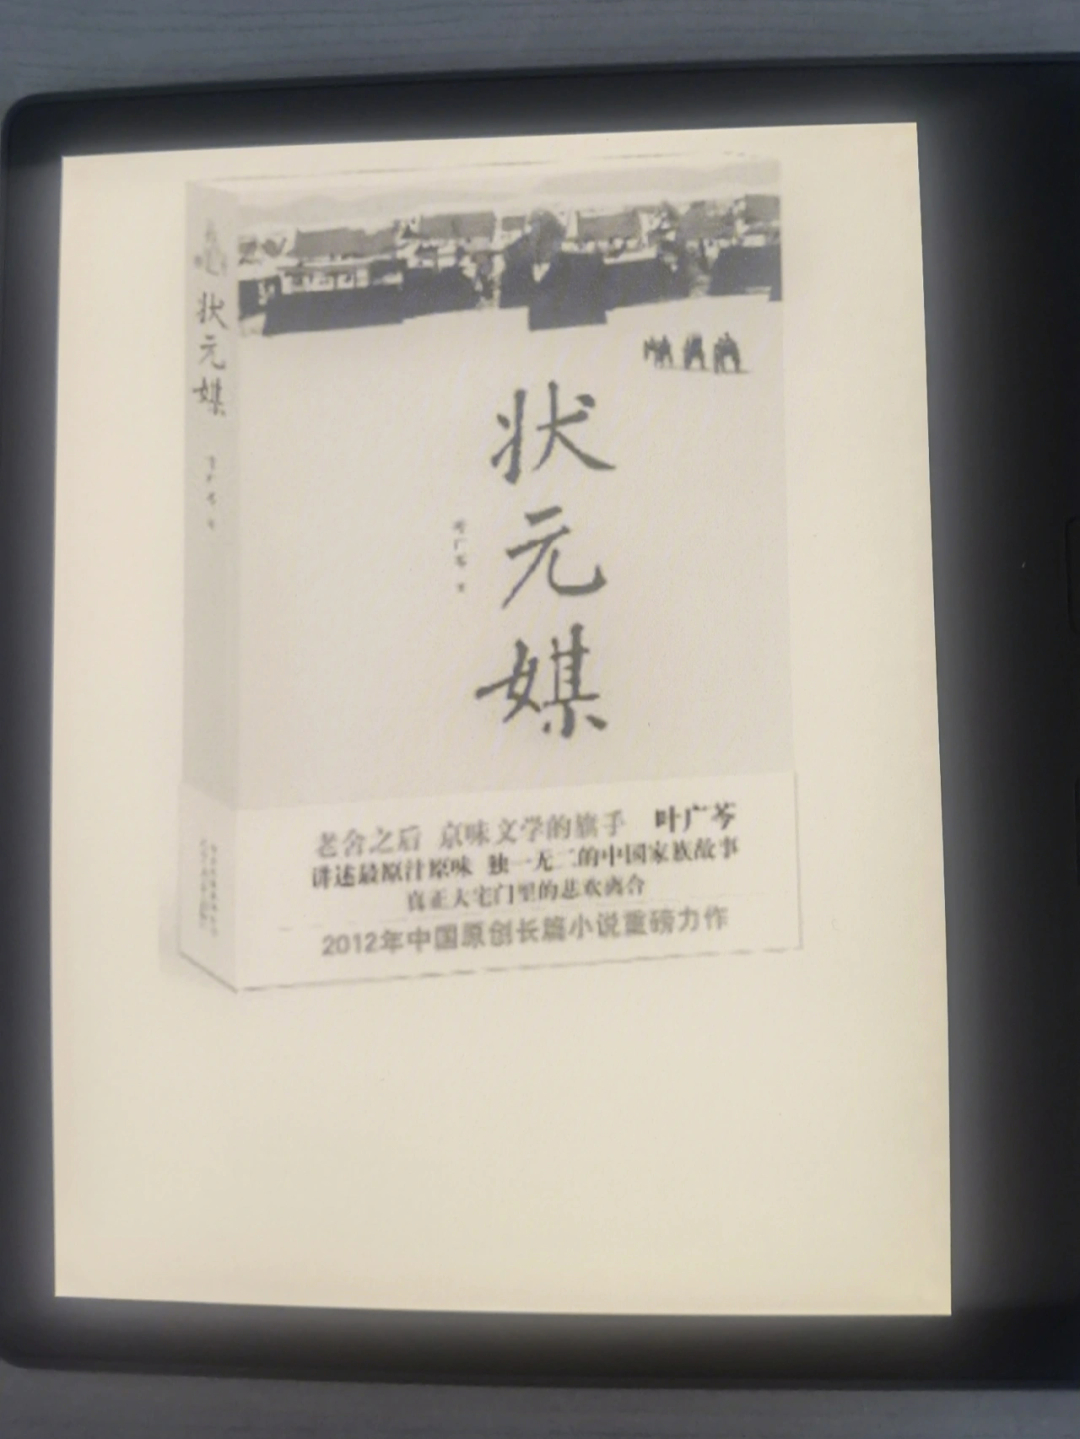 《状元媒》是叶广芩创作的京味儿长篇小说,叶广芩祖姓叶赫那拉,其家族